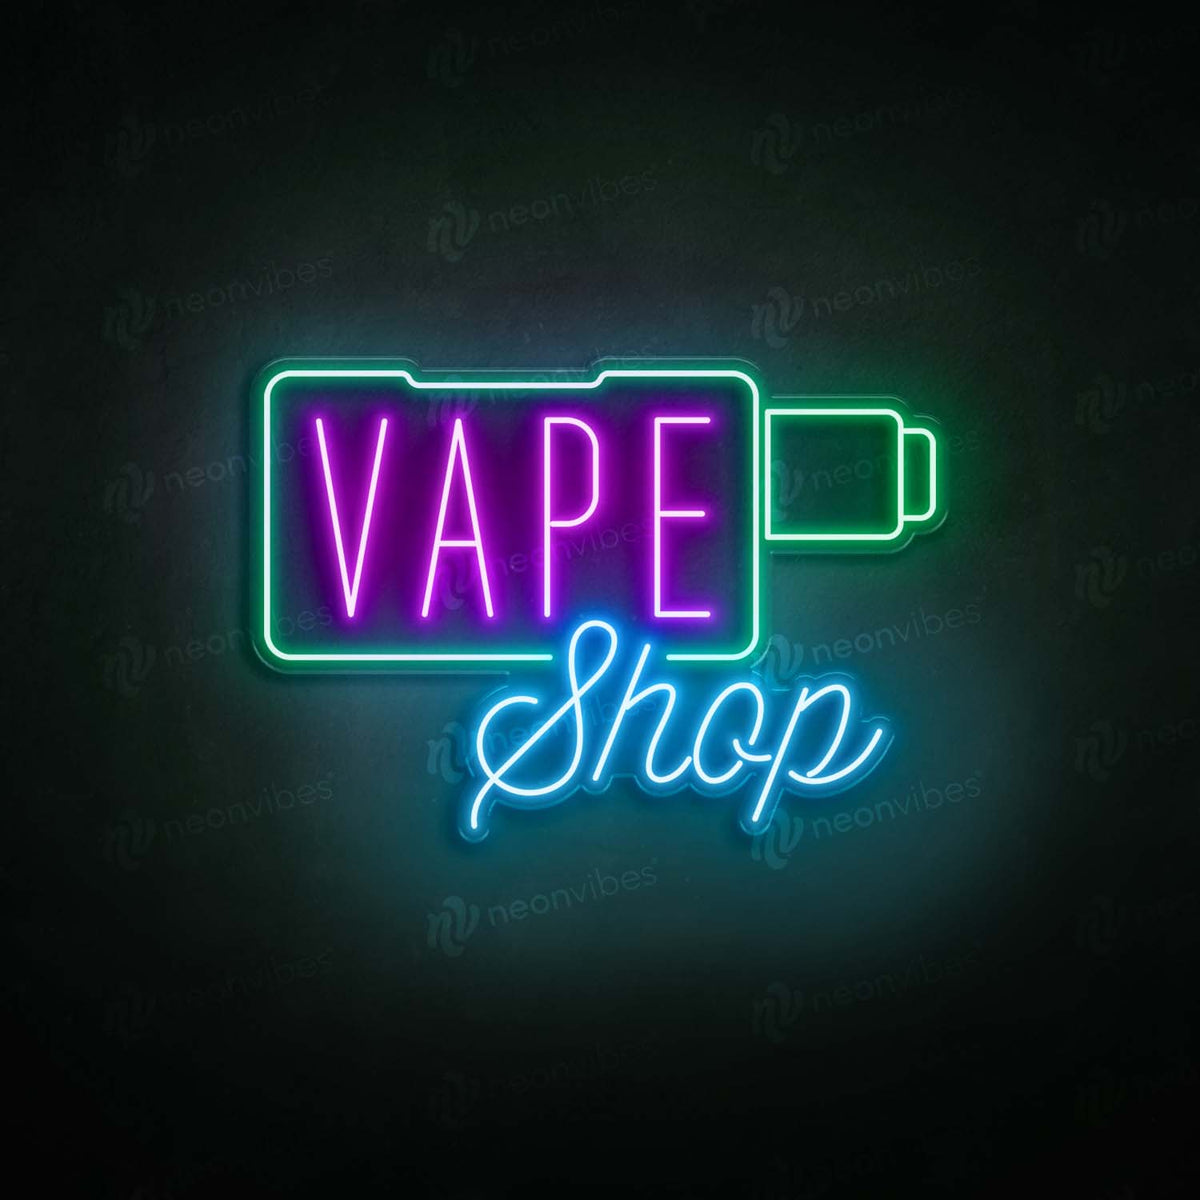 Vape Shop V2 neon sign